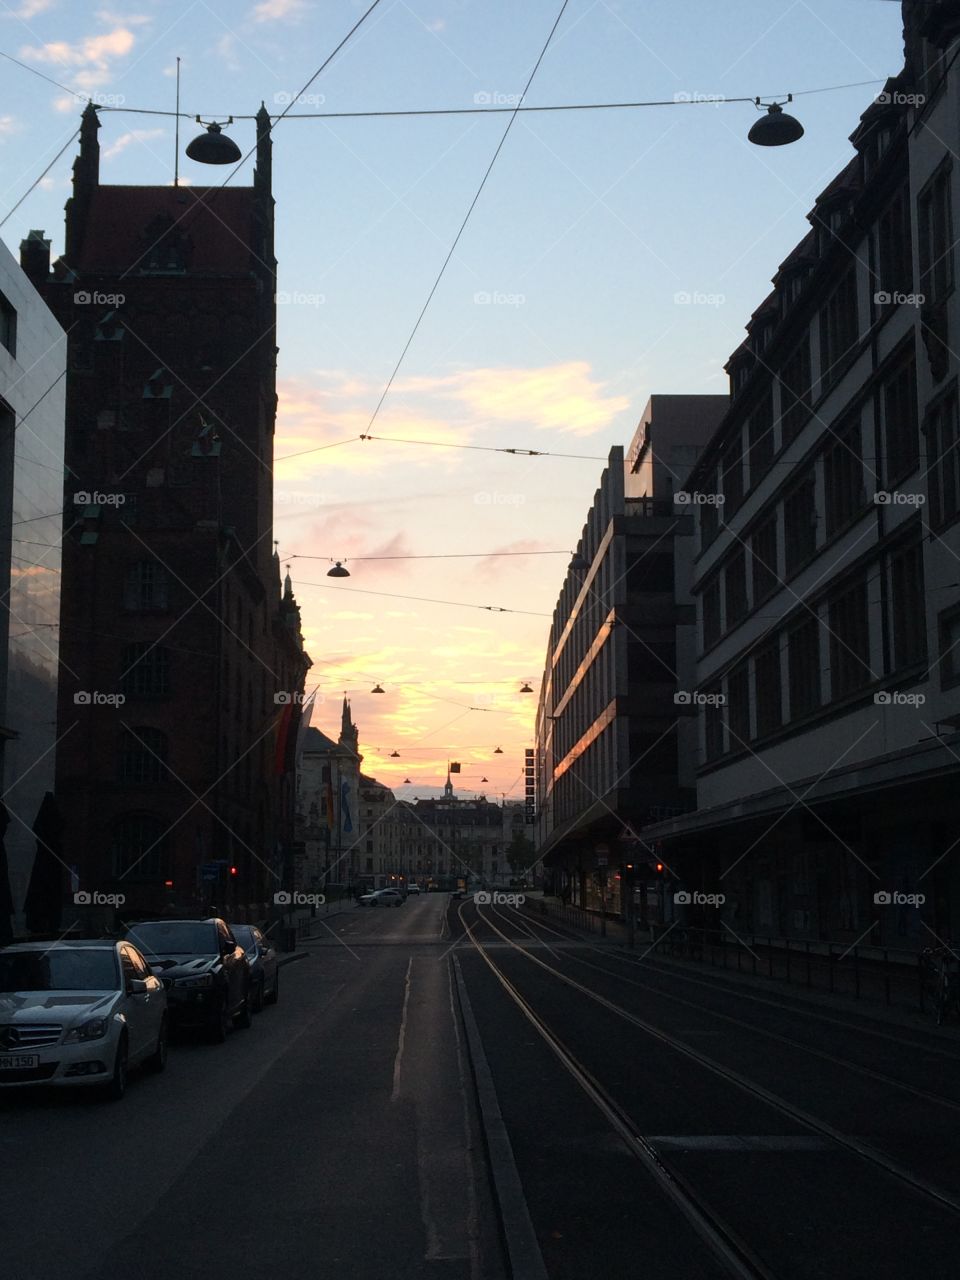 Munich's sunset!